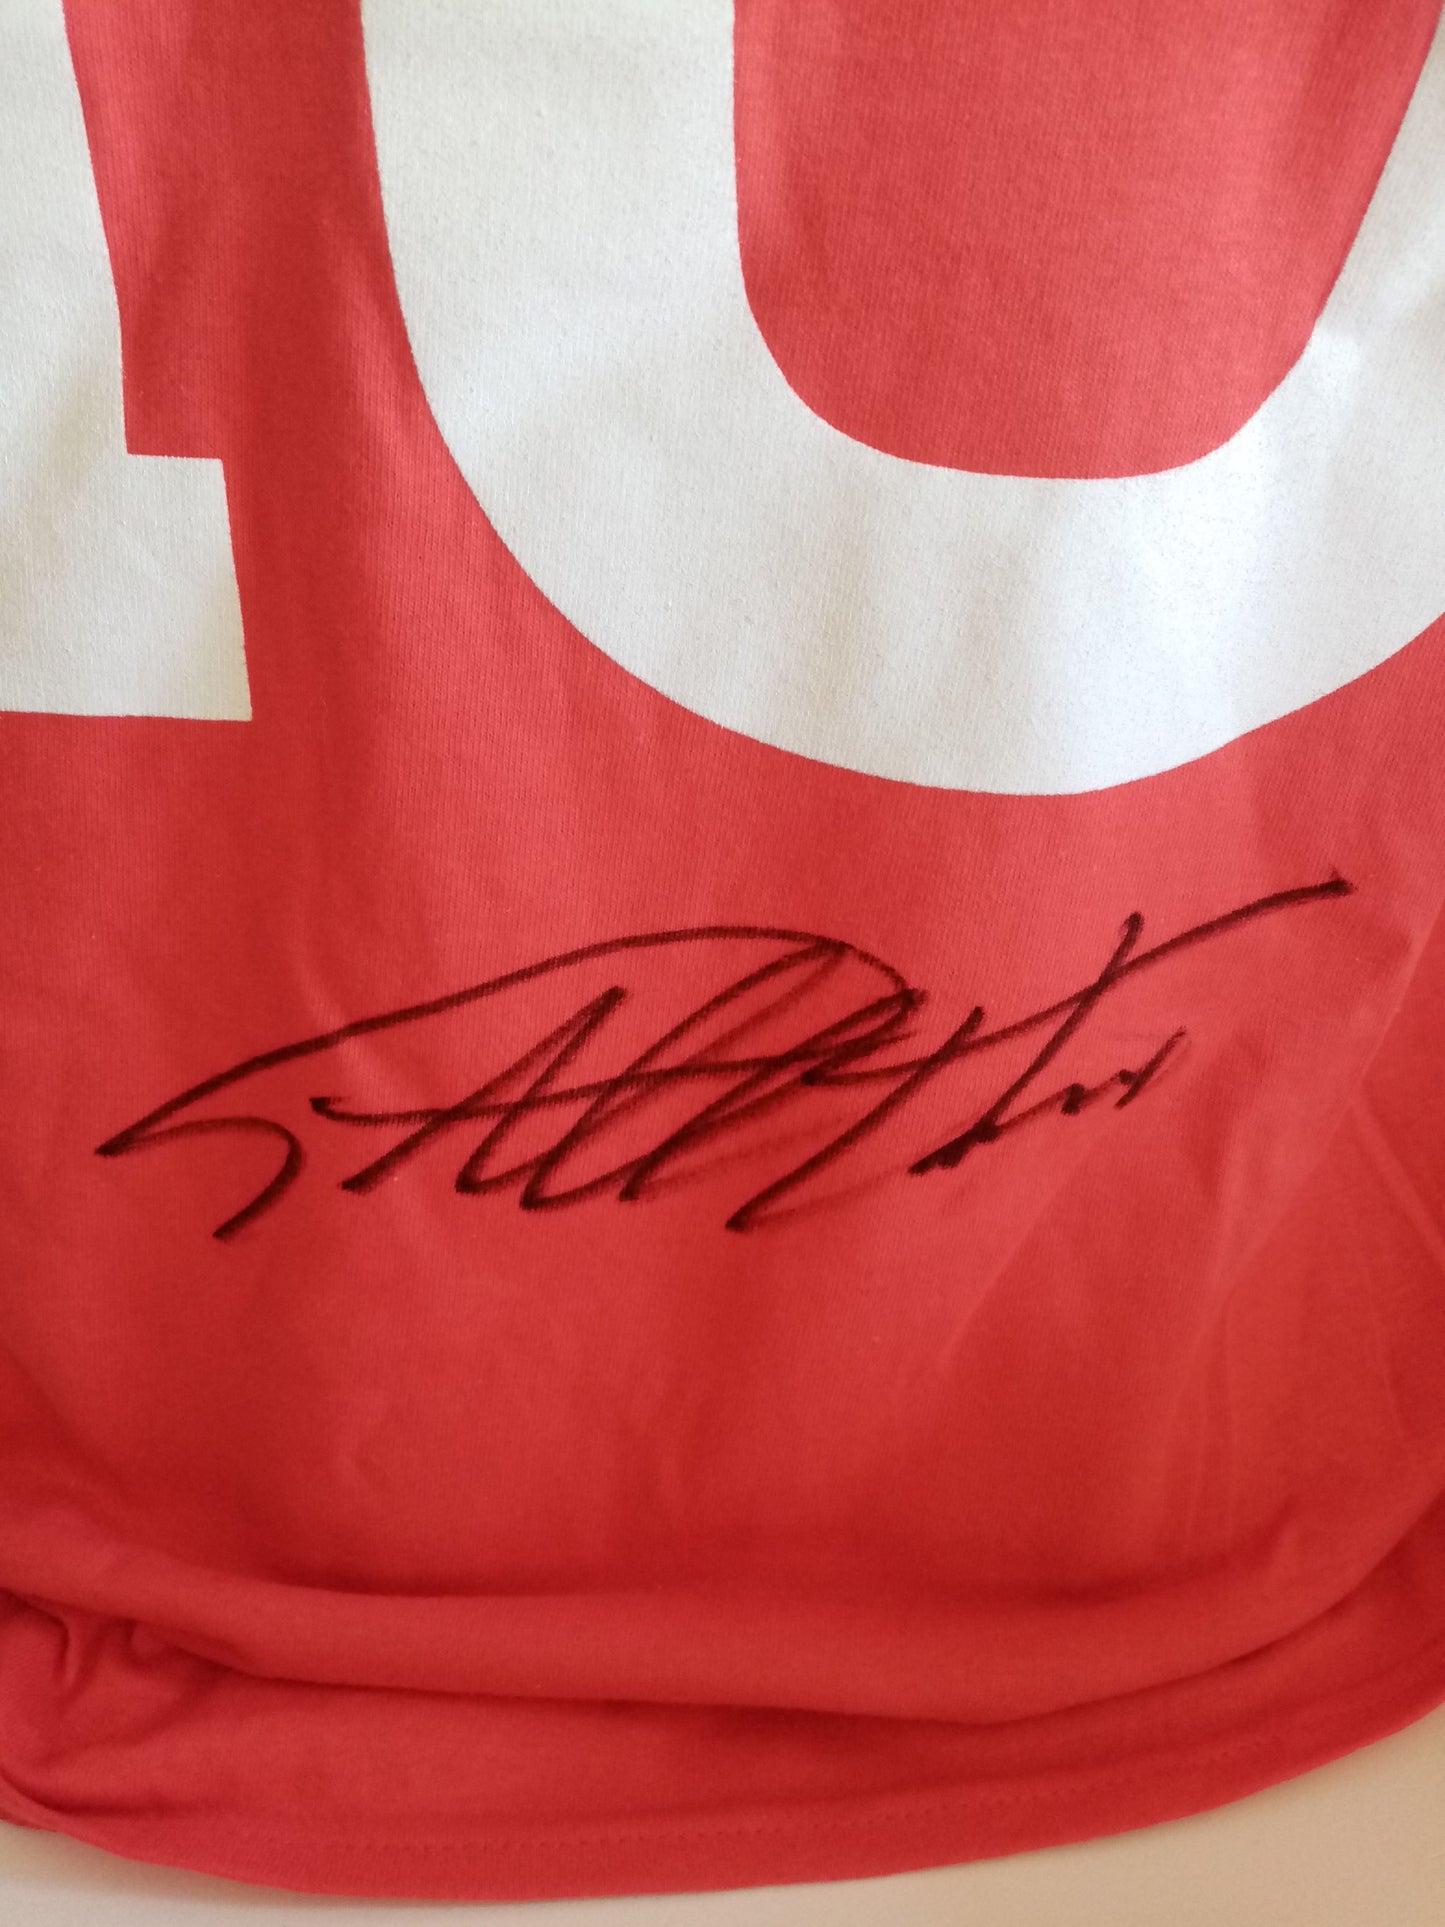 Shirt Geoff Hurst signiert England Wembley West Ham Neu COA M